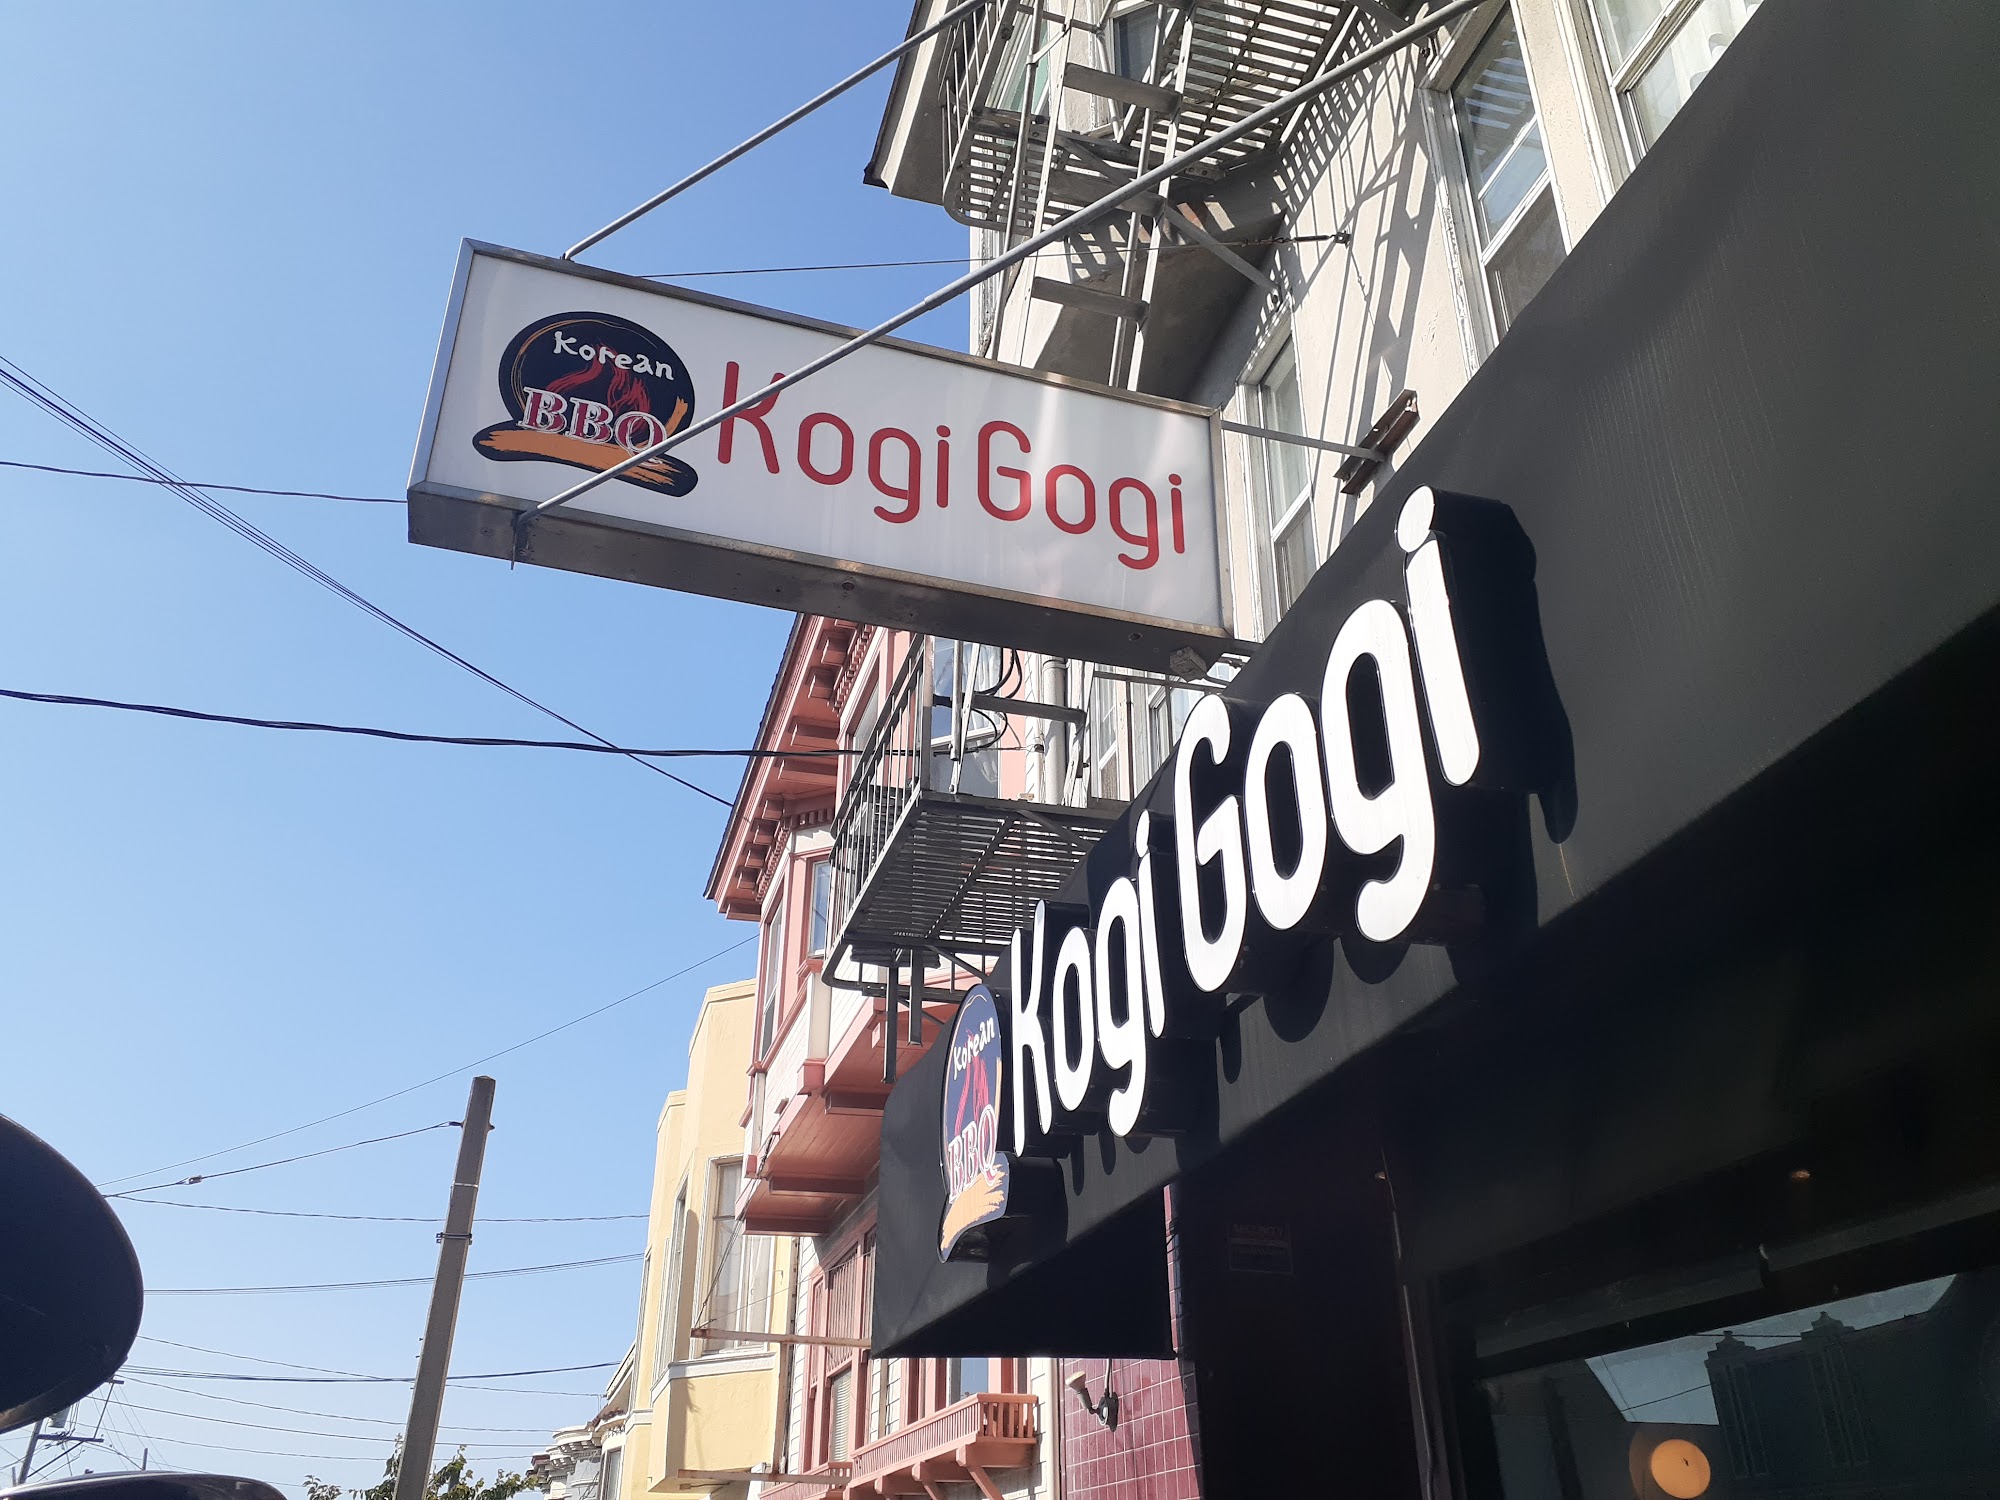 Kogi Gogi BBQ